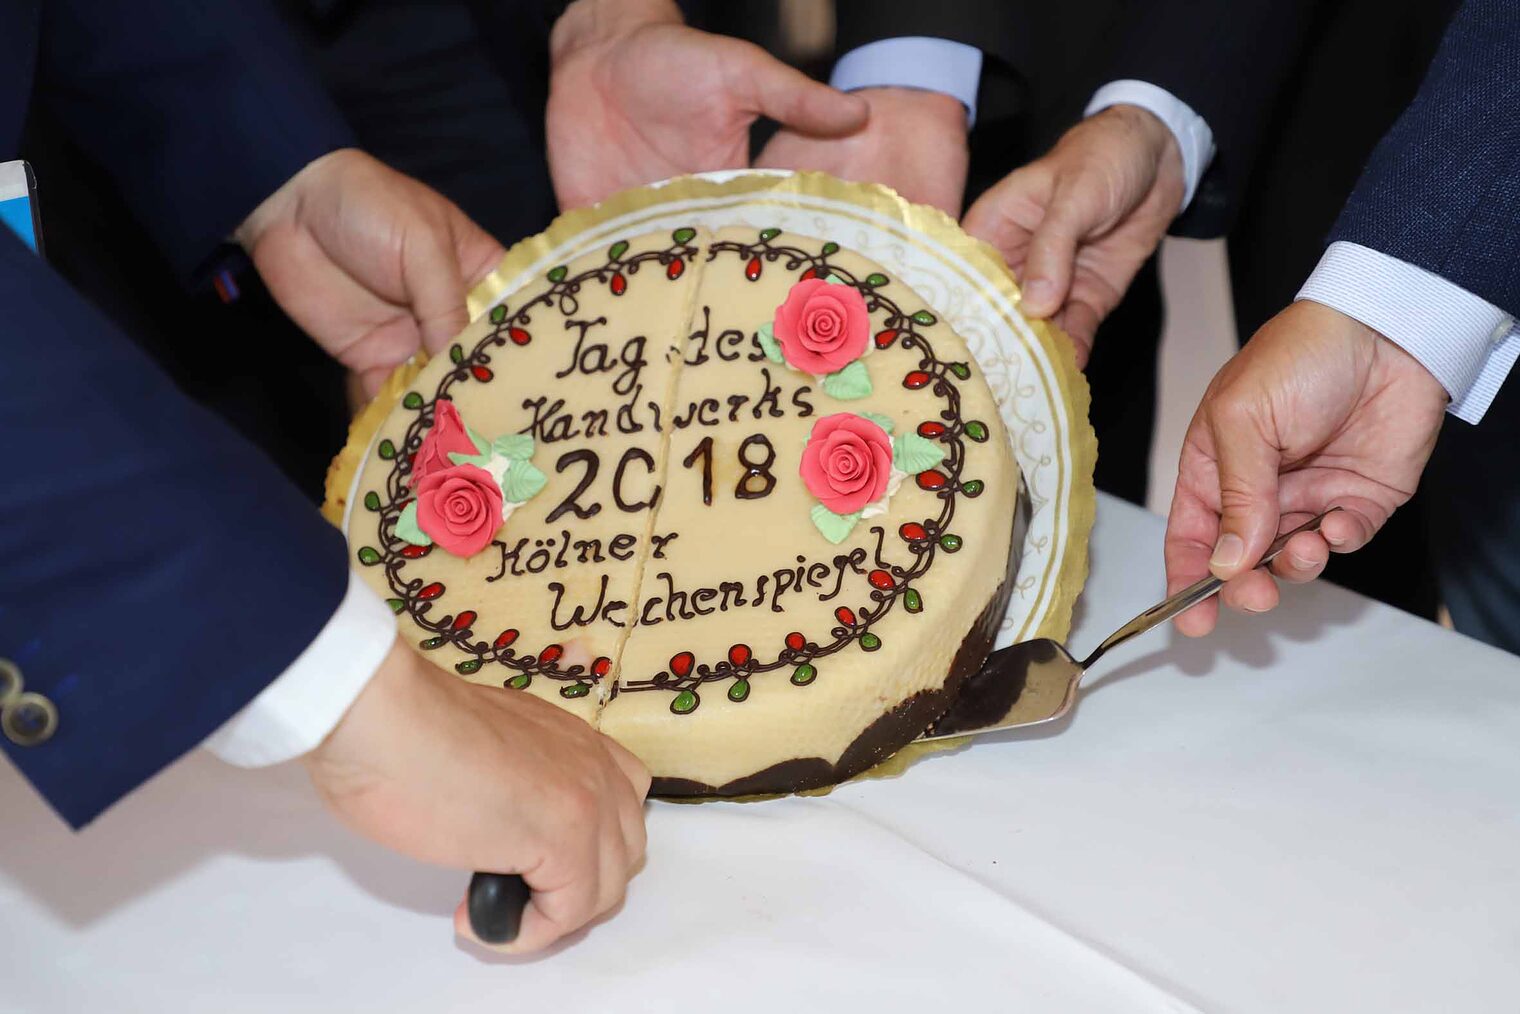 Empfang in der Handwerkskammer zu Köln anlässlich des "Tag des Handwerks 2018"